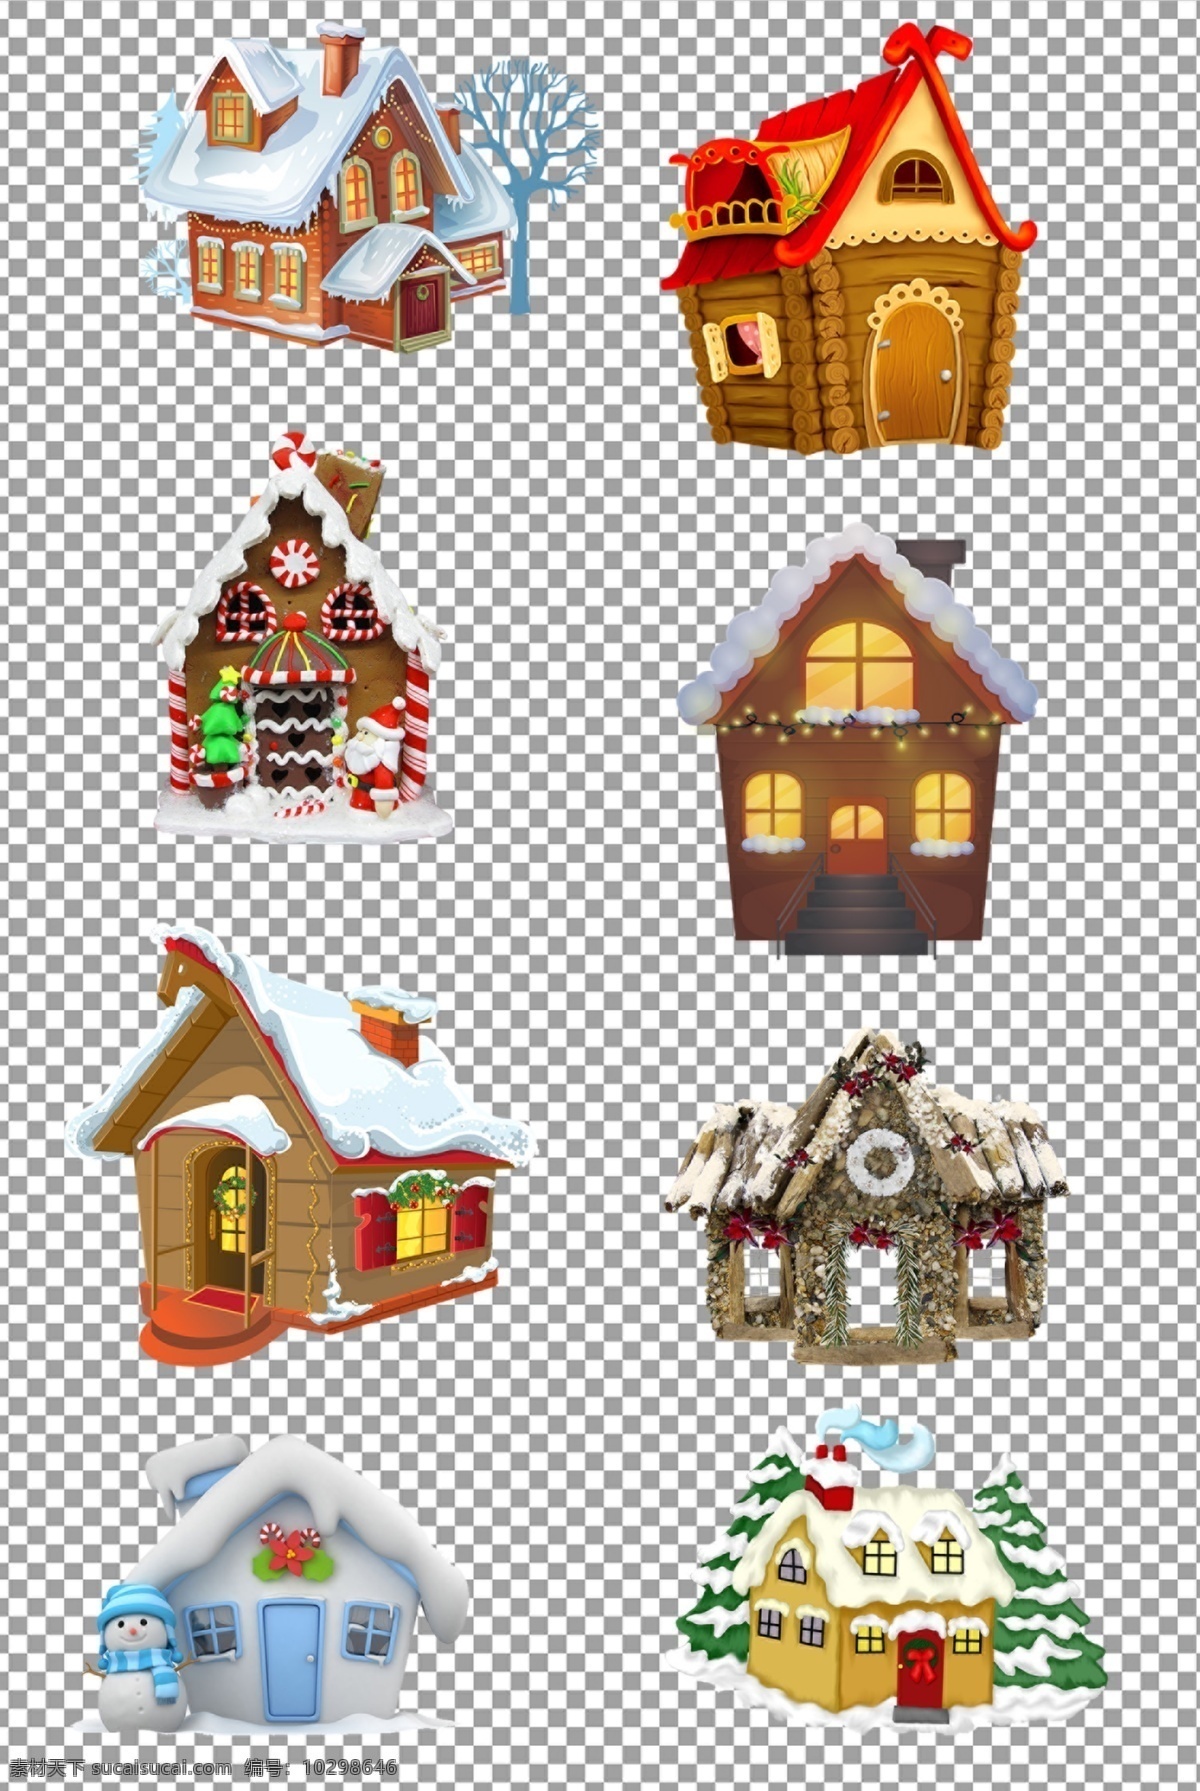 圣诞房子图片 手绘 可爱 圣诞 房子 房屋 免抠 无背景 免抠图 抠图 元素 透明 通道 png免抠图 分层